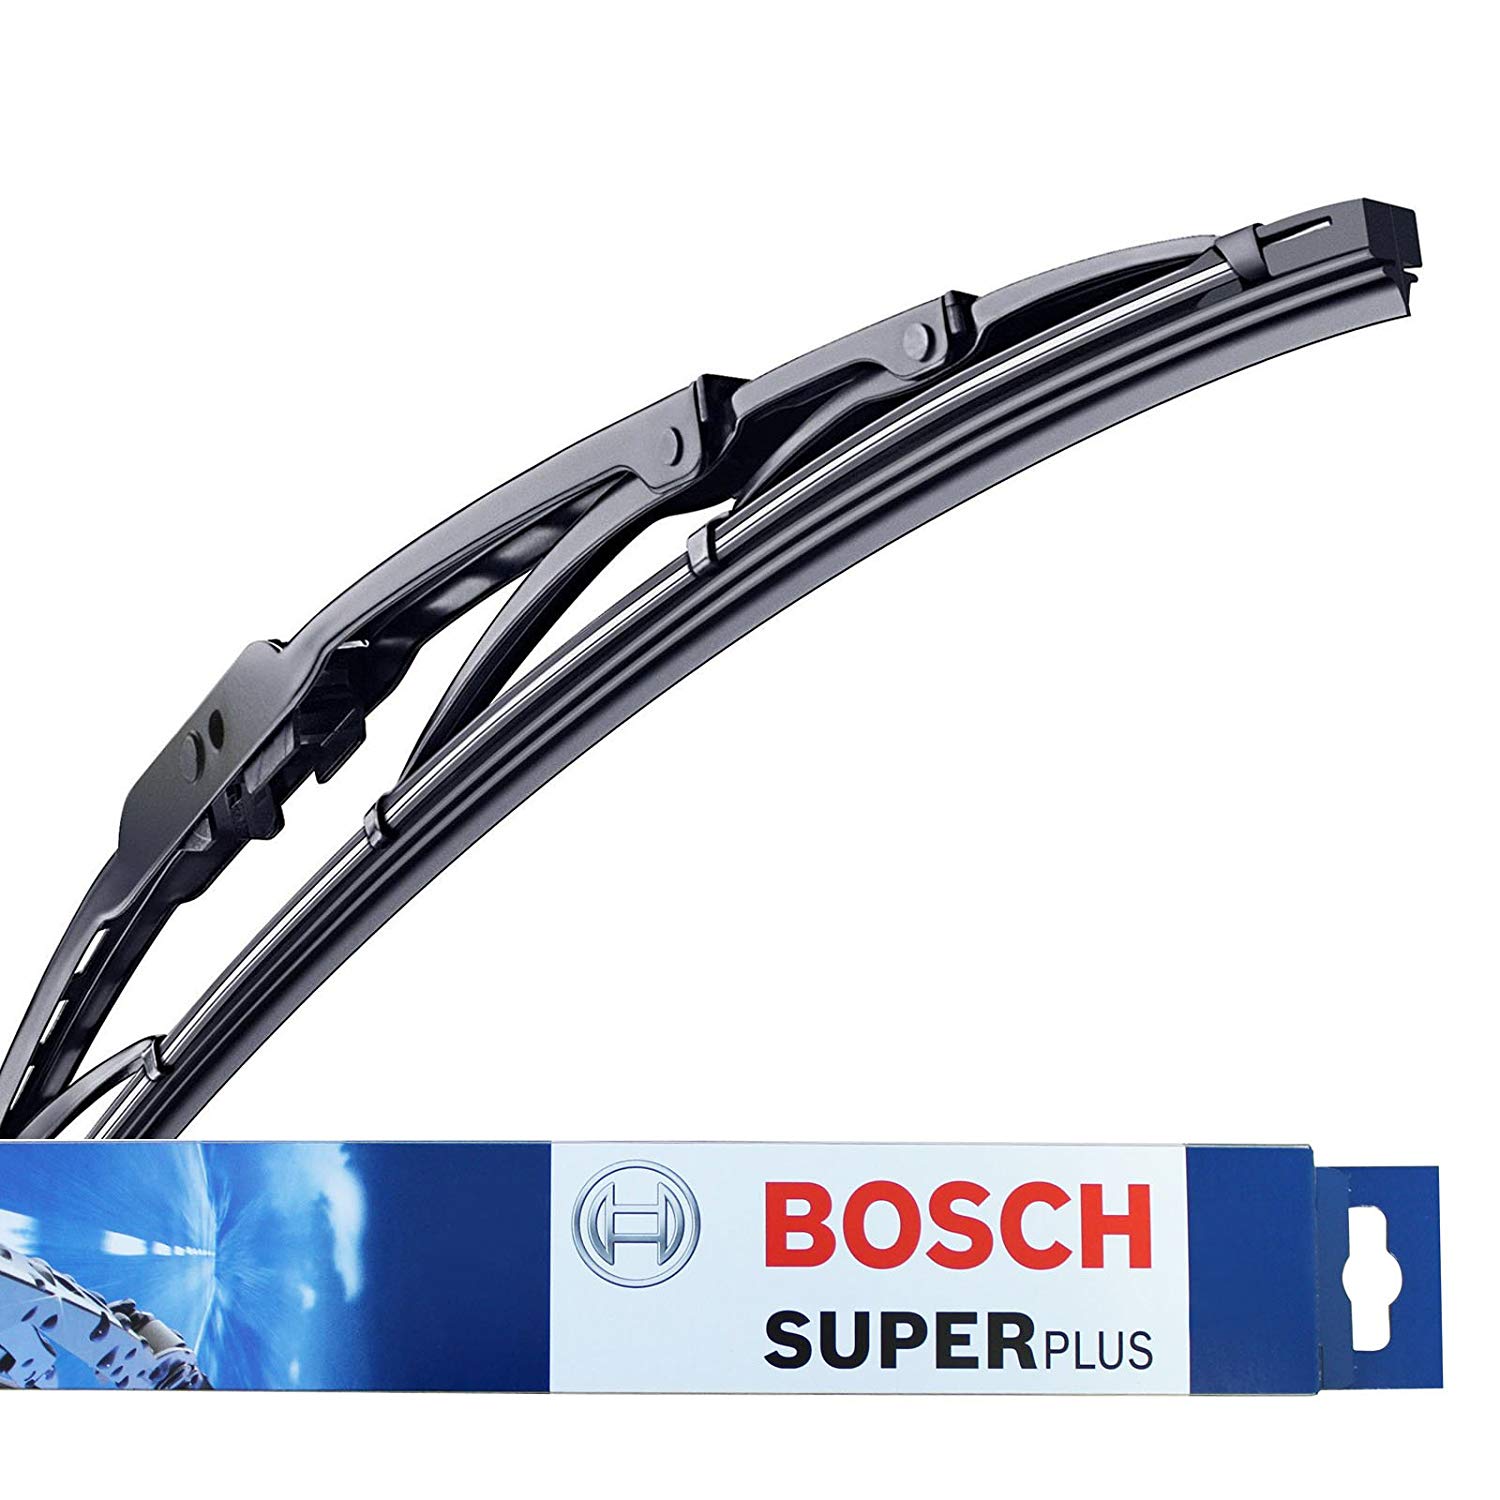 Bosch CLEAR Advantage Micro Edge Wiper Blade - Garage Optimax Plus